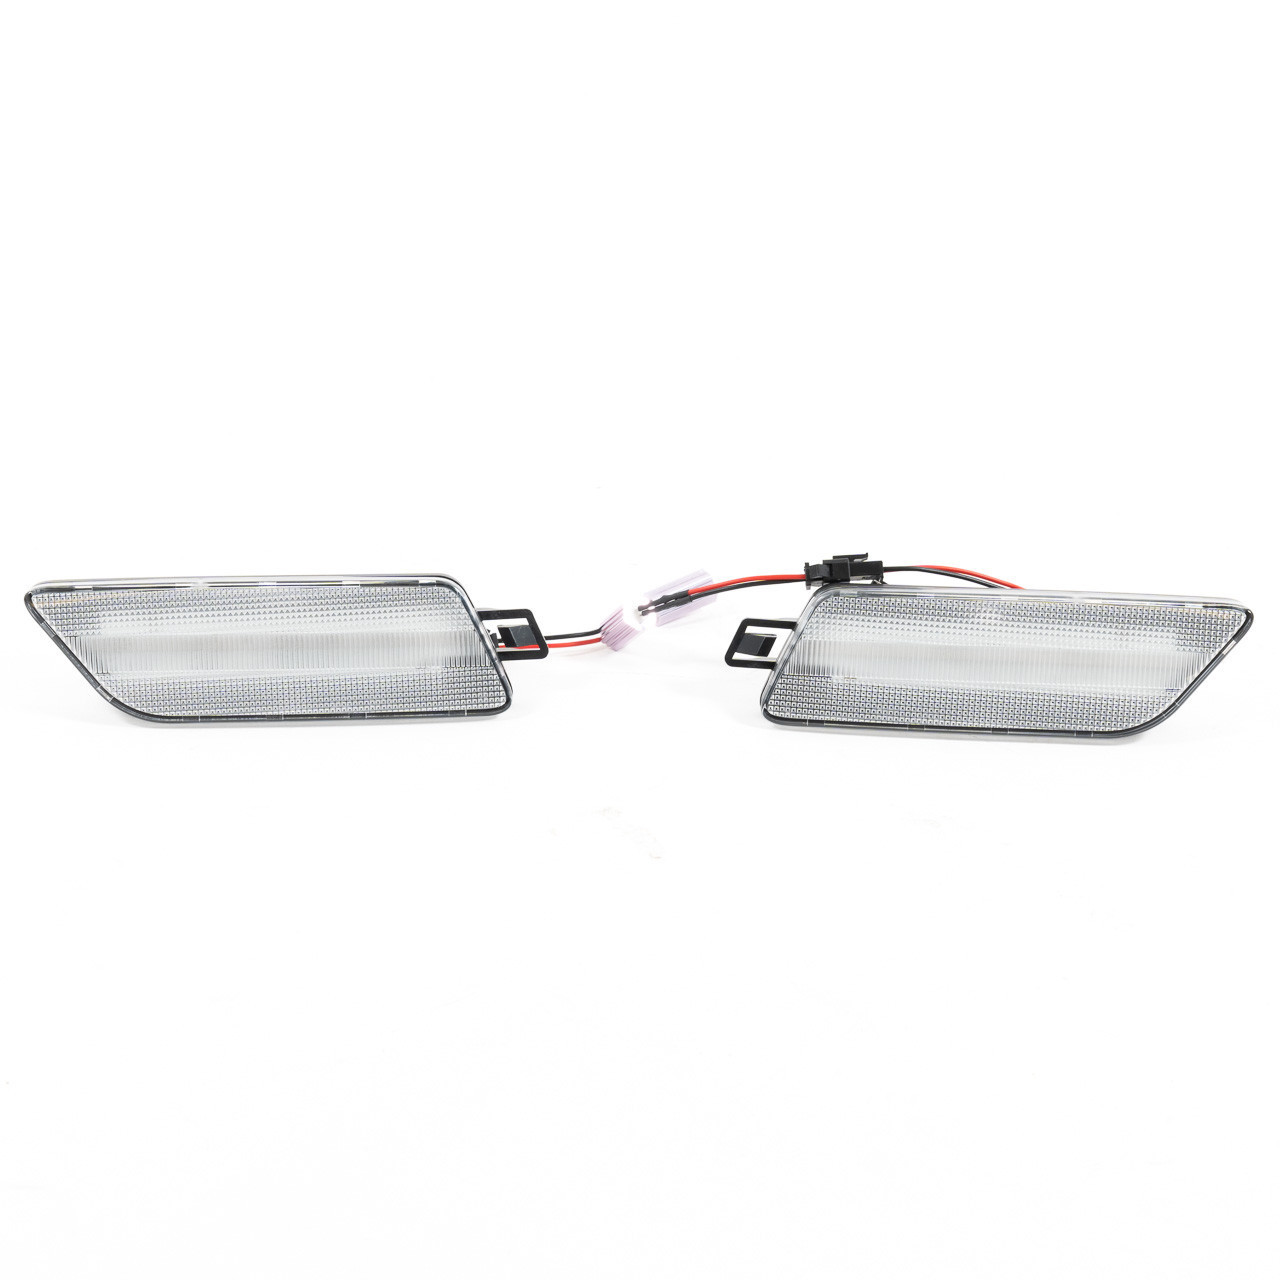 2x New Original Blinker LED TFL Turn Signal Complete For Porsche Macan TURBO